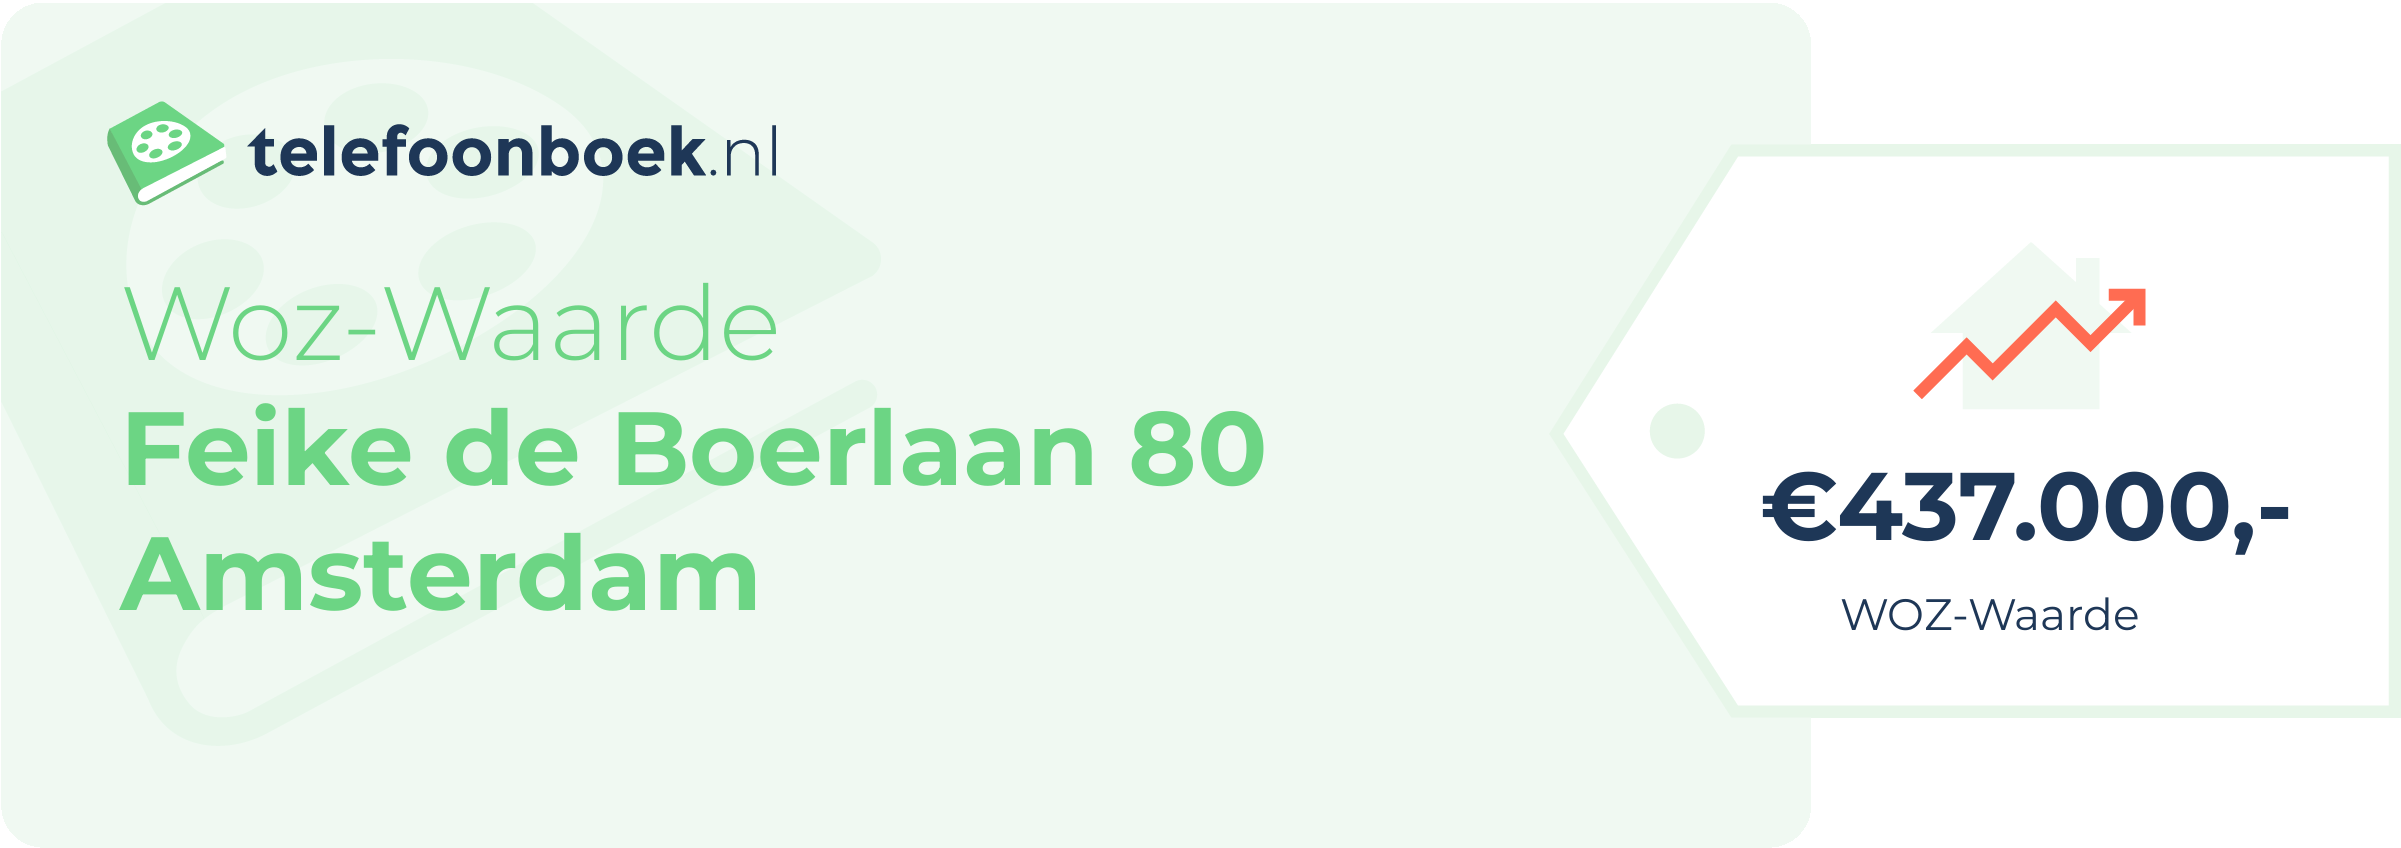 WOZ-waarde Feike De Boerlaan 80 Amsterdam